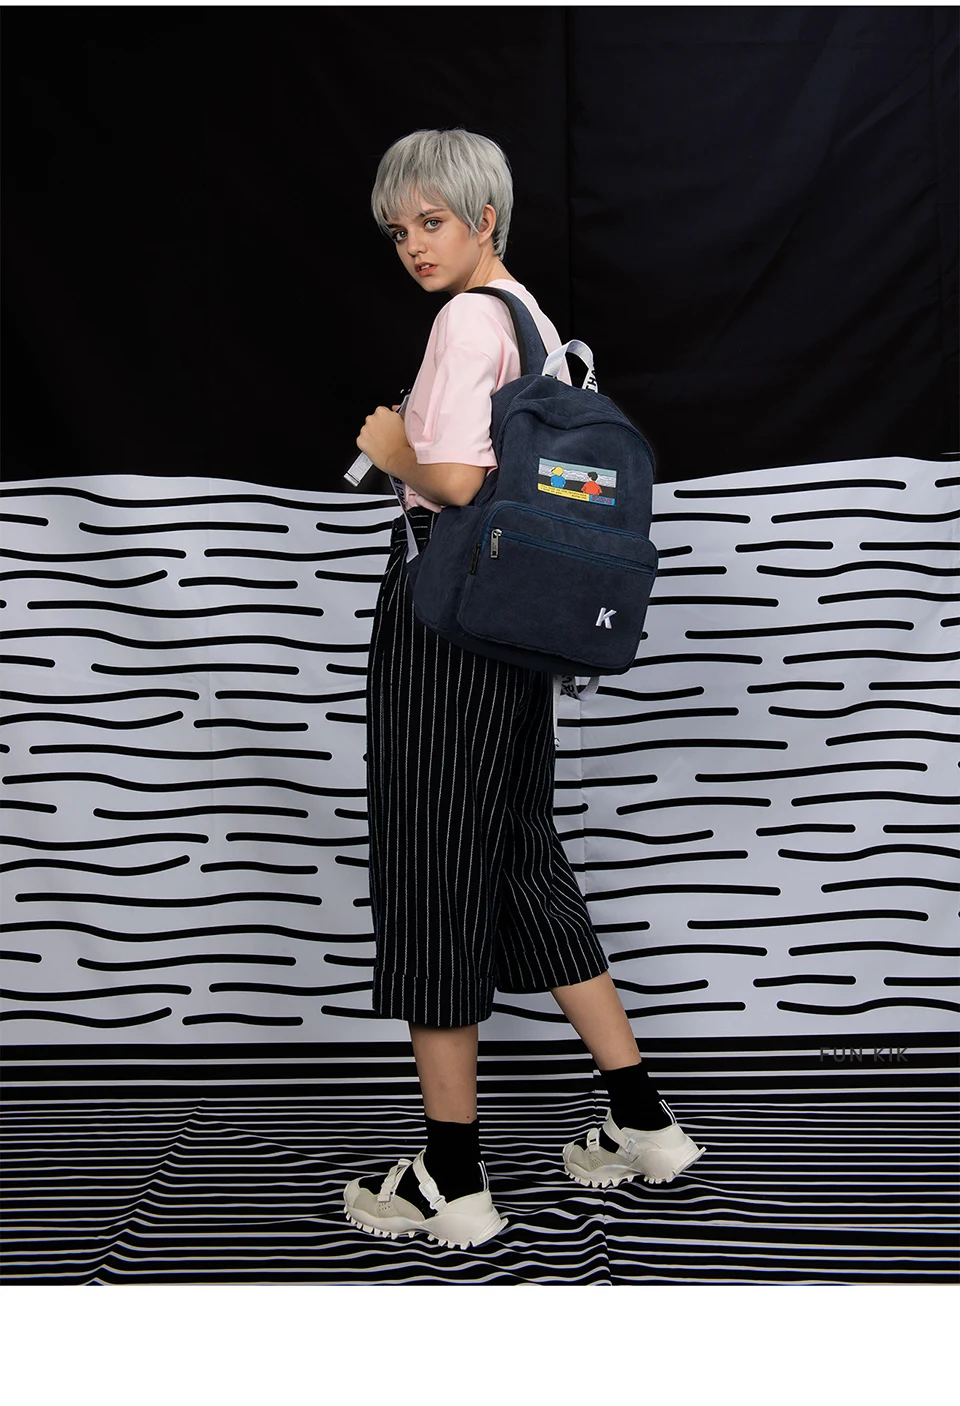 Креативные и практичные розовые и темно-синие вельветовые рюкзаки с вышивкой для школы и путешествий в серии сцен(FUN KIK